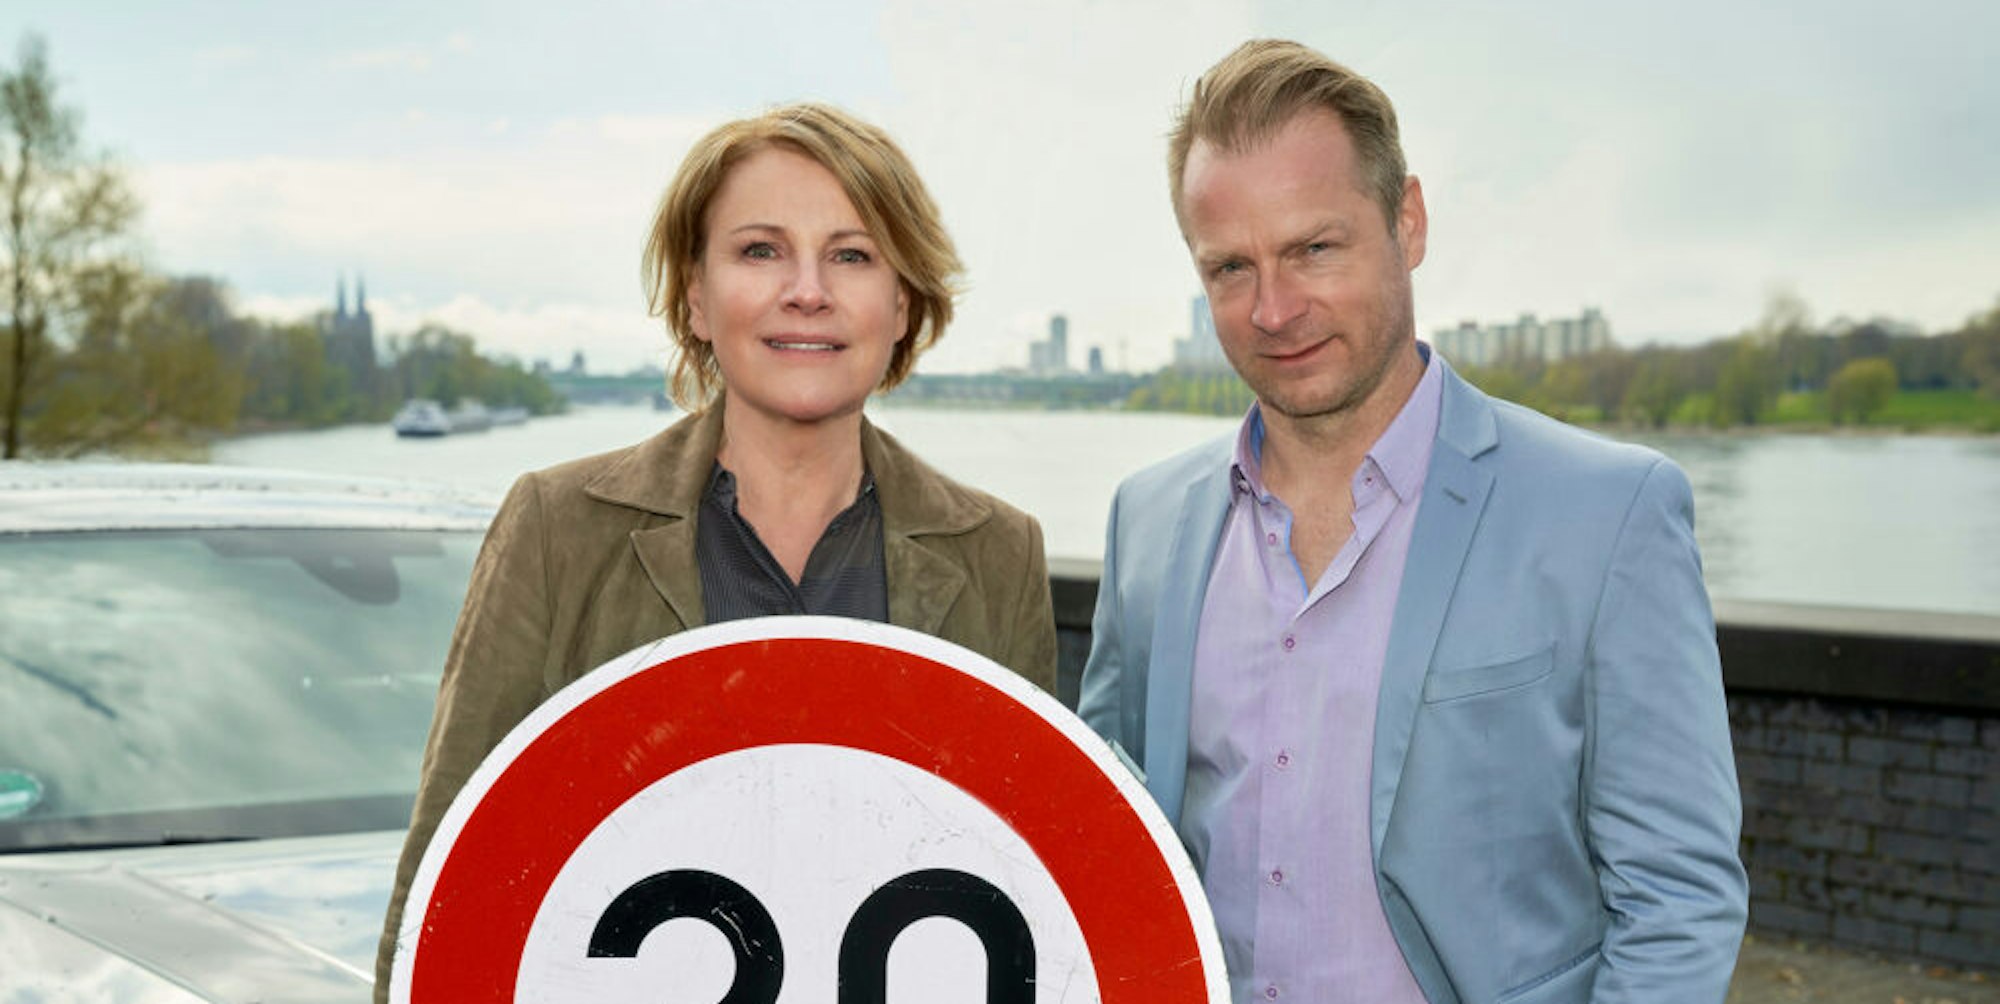 Marie Brand (Mariele Millowitsch) und Jürgen Simmel (Hinnerk Schönemann) in der neuen ZDF-Produktion.